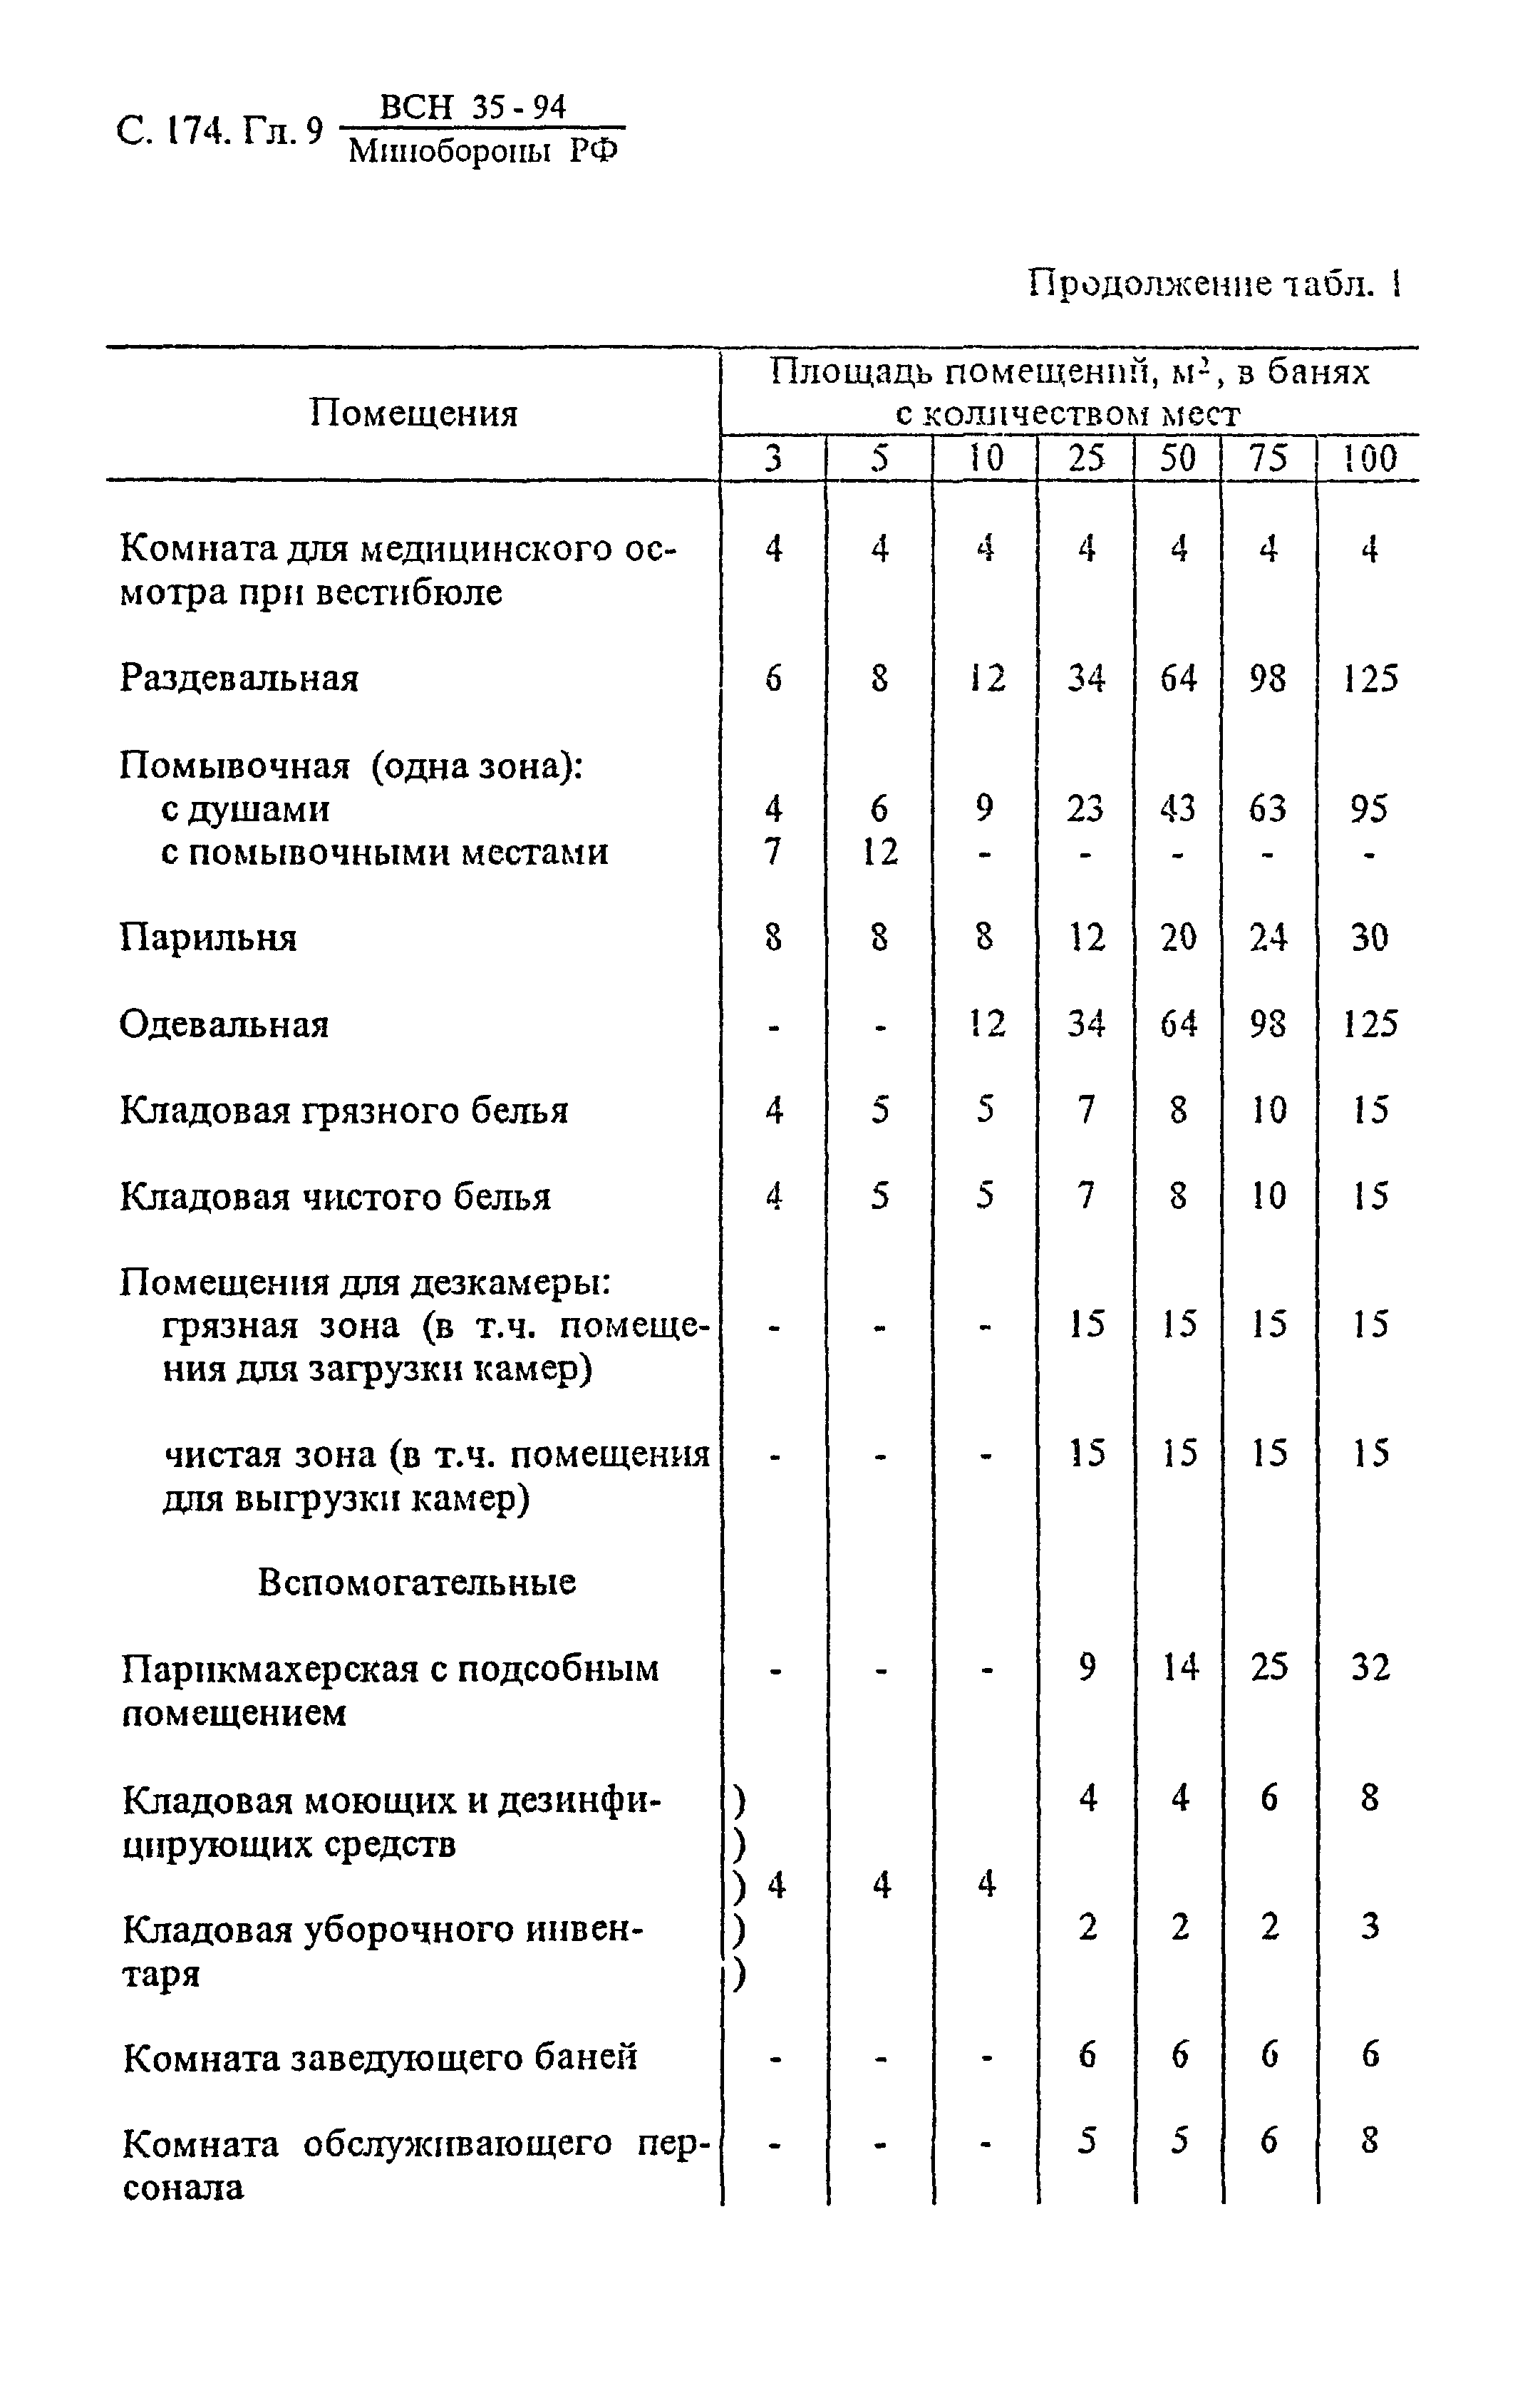 ВСН 35-94 МО РФ